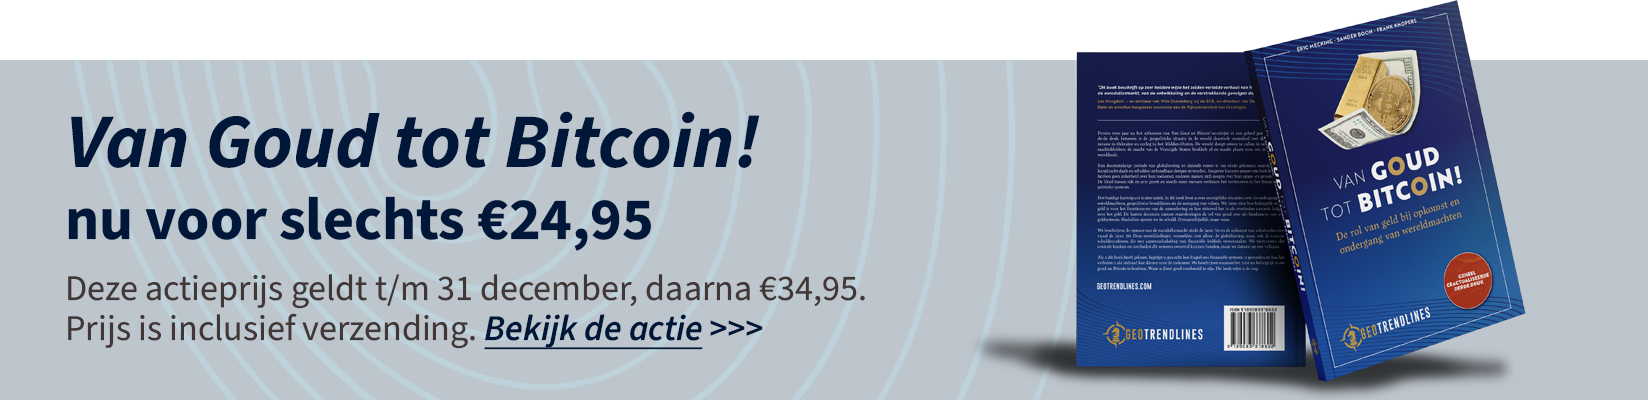 Van Goud tot Bitcoin nu voor slechts €24,95